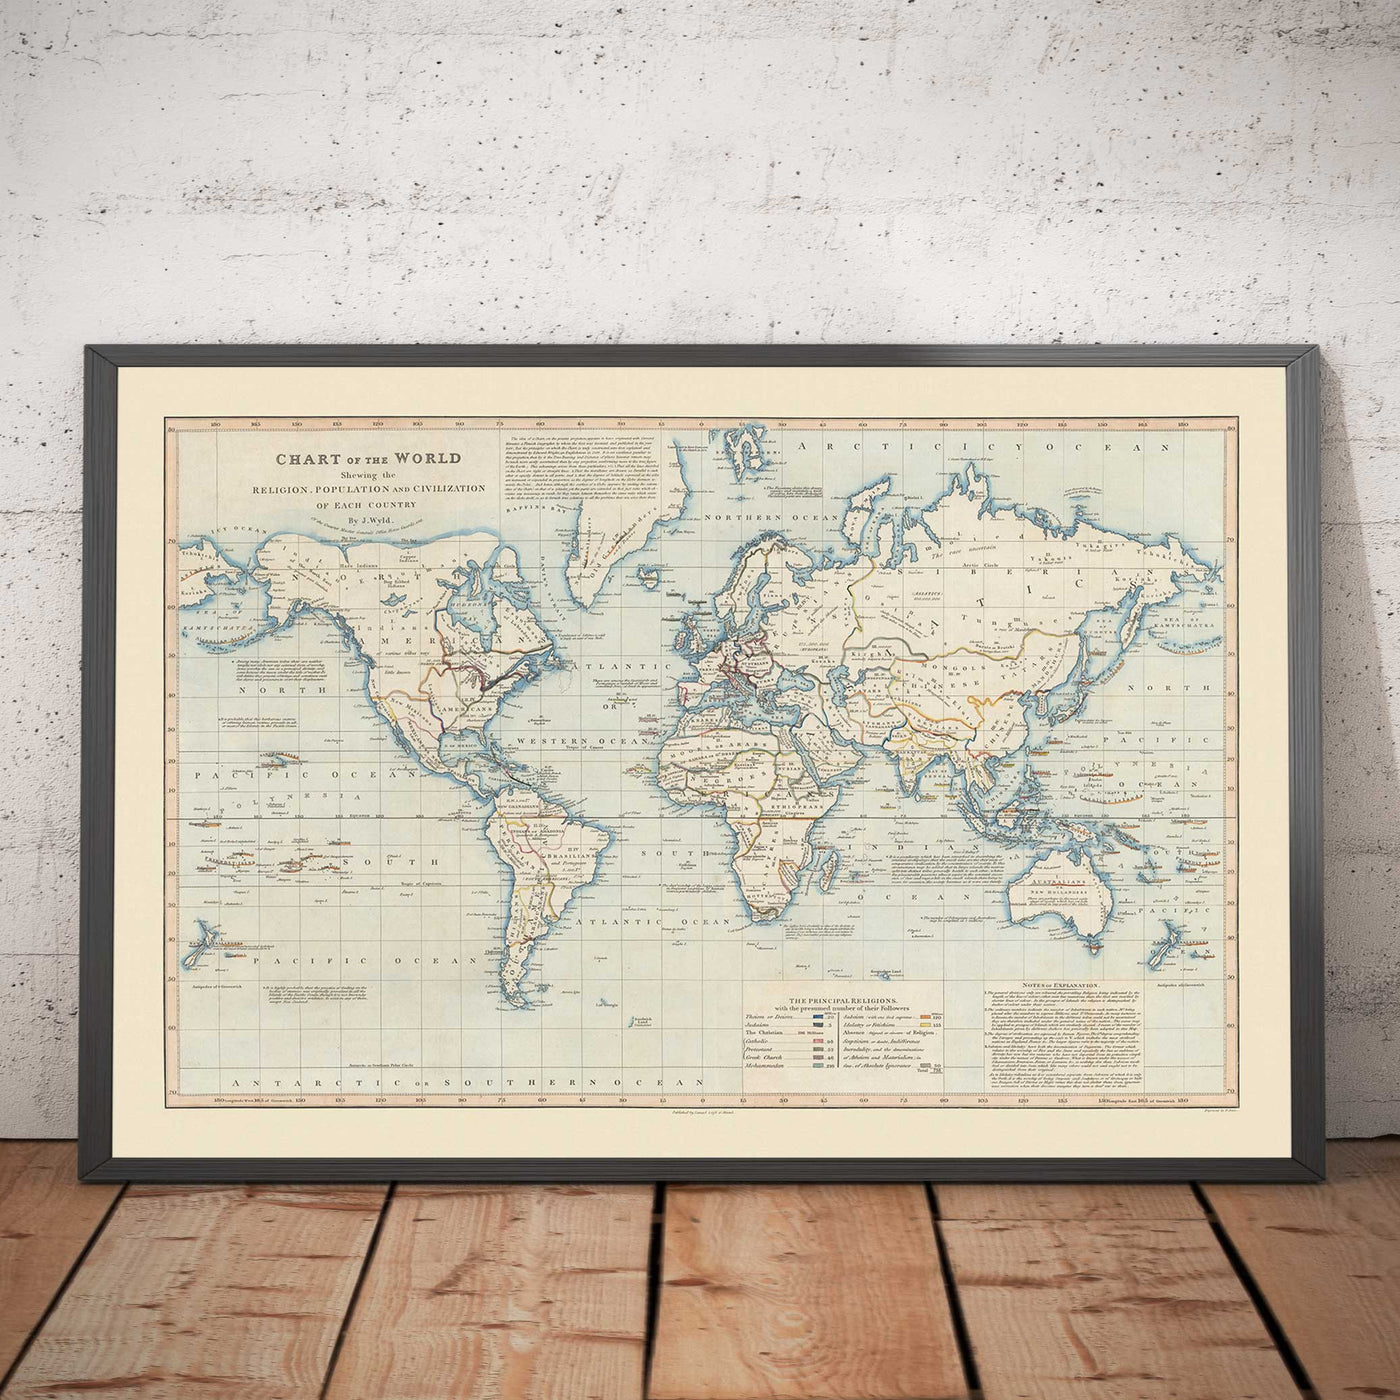 Ancienne carte du monde, 1818 par James Wyld - Tableau indiquant la religion, la population et la civilisation de chaque pays